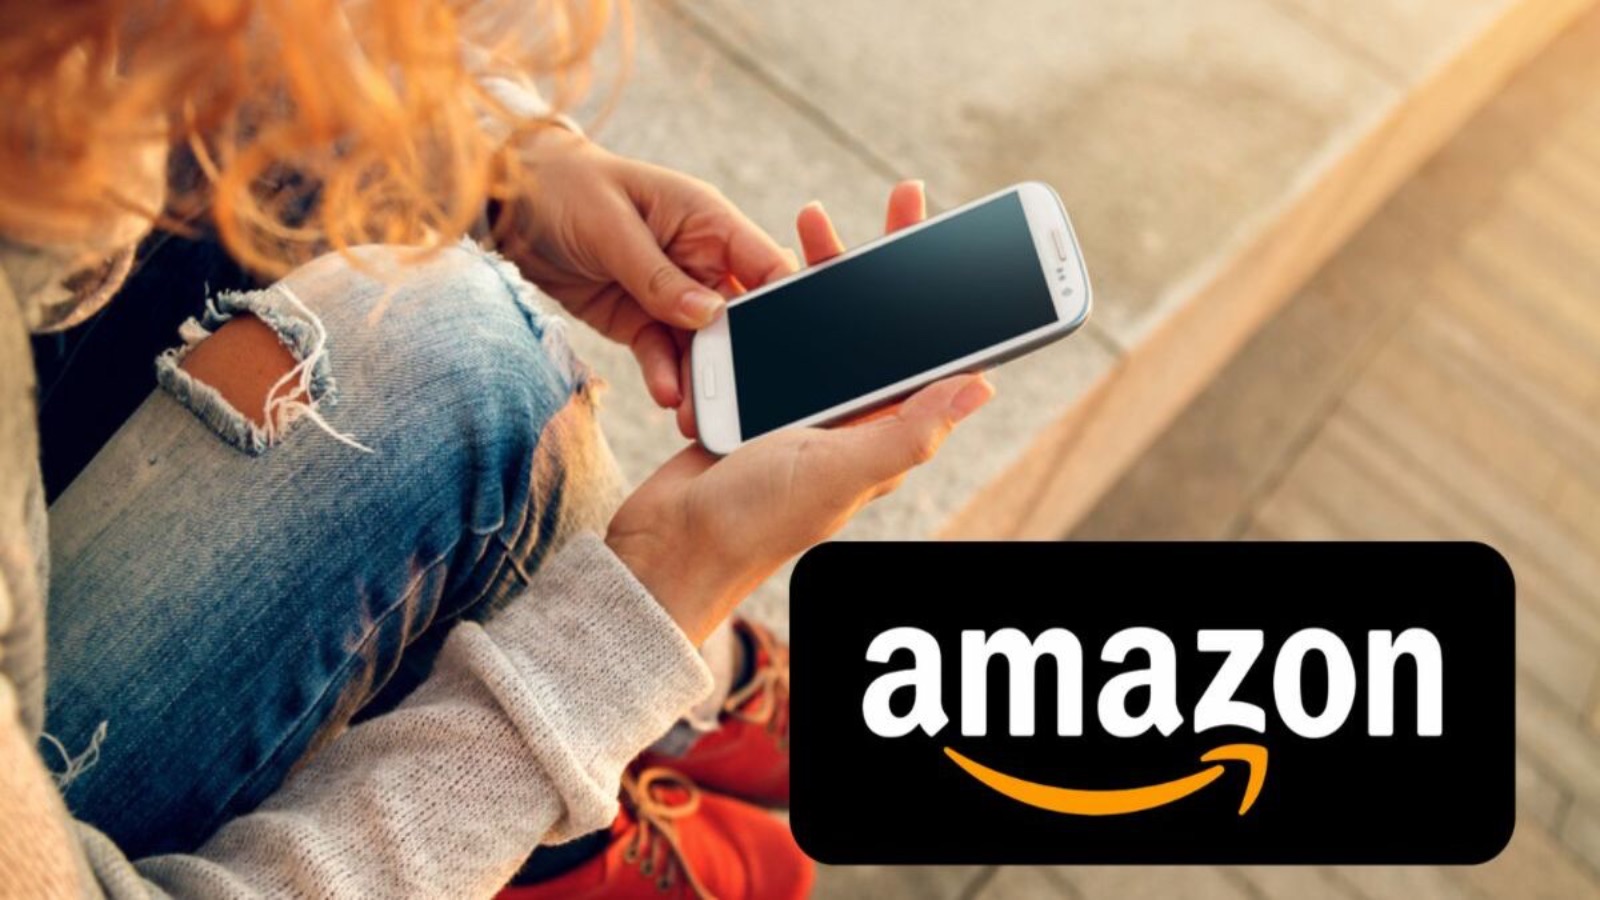 Offerte Amazon in SCONTO al 70% solo OGGI nella lista segreta